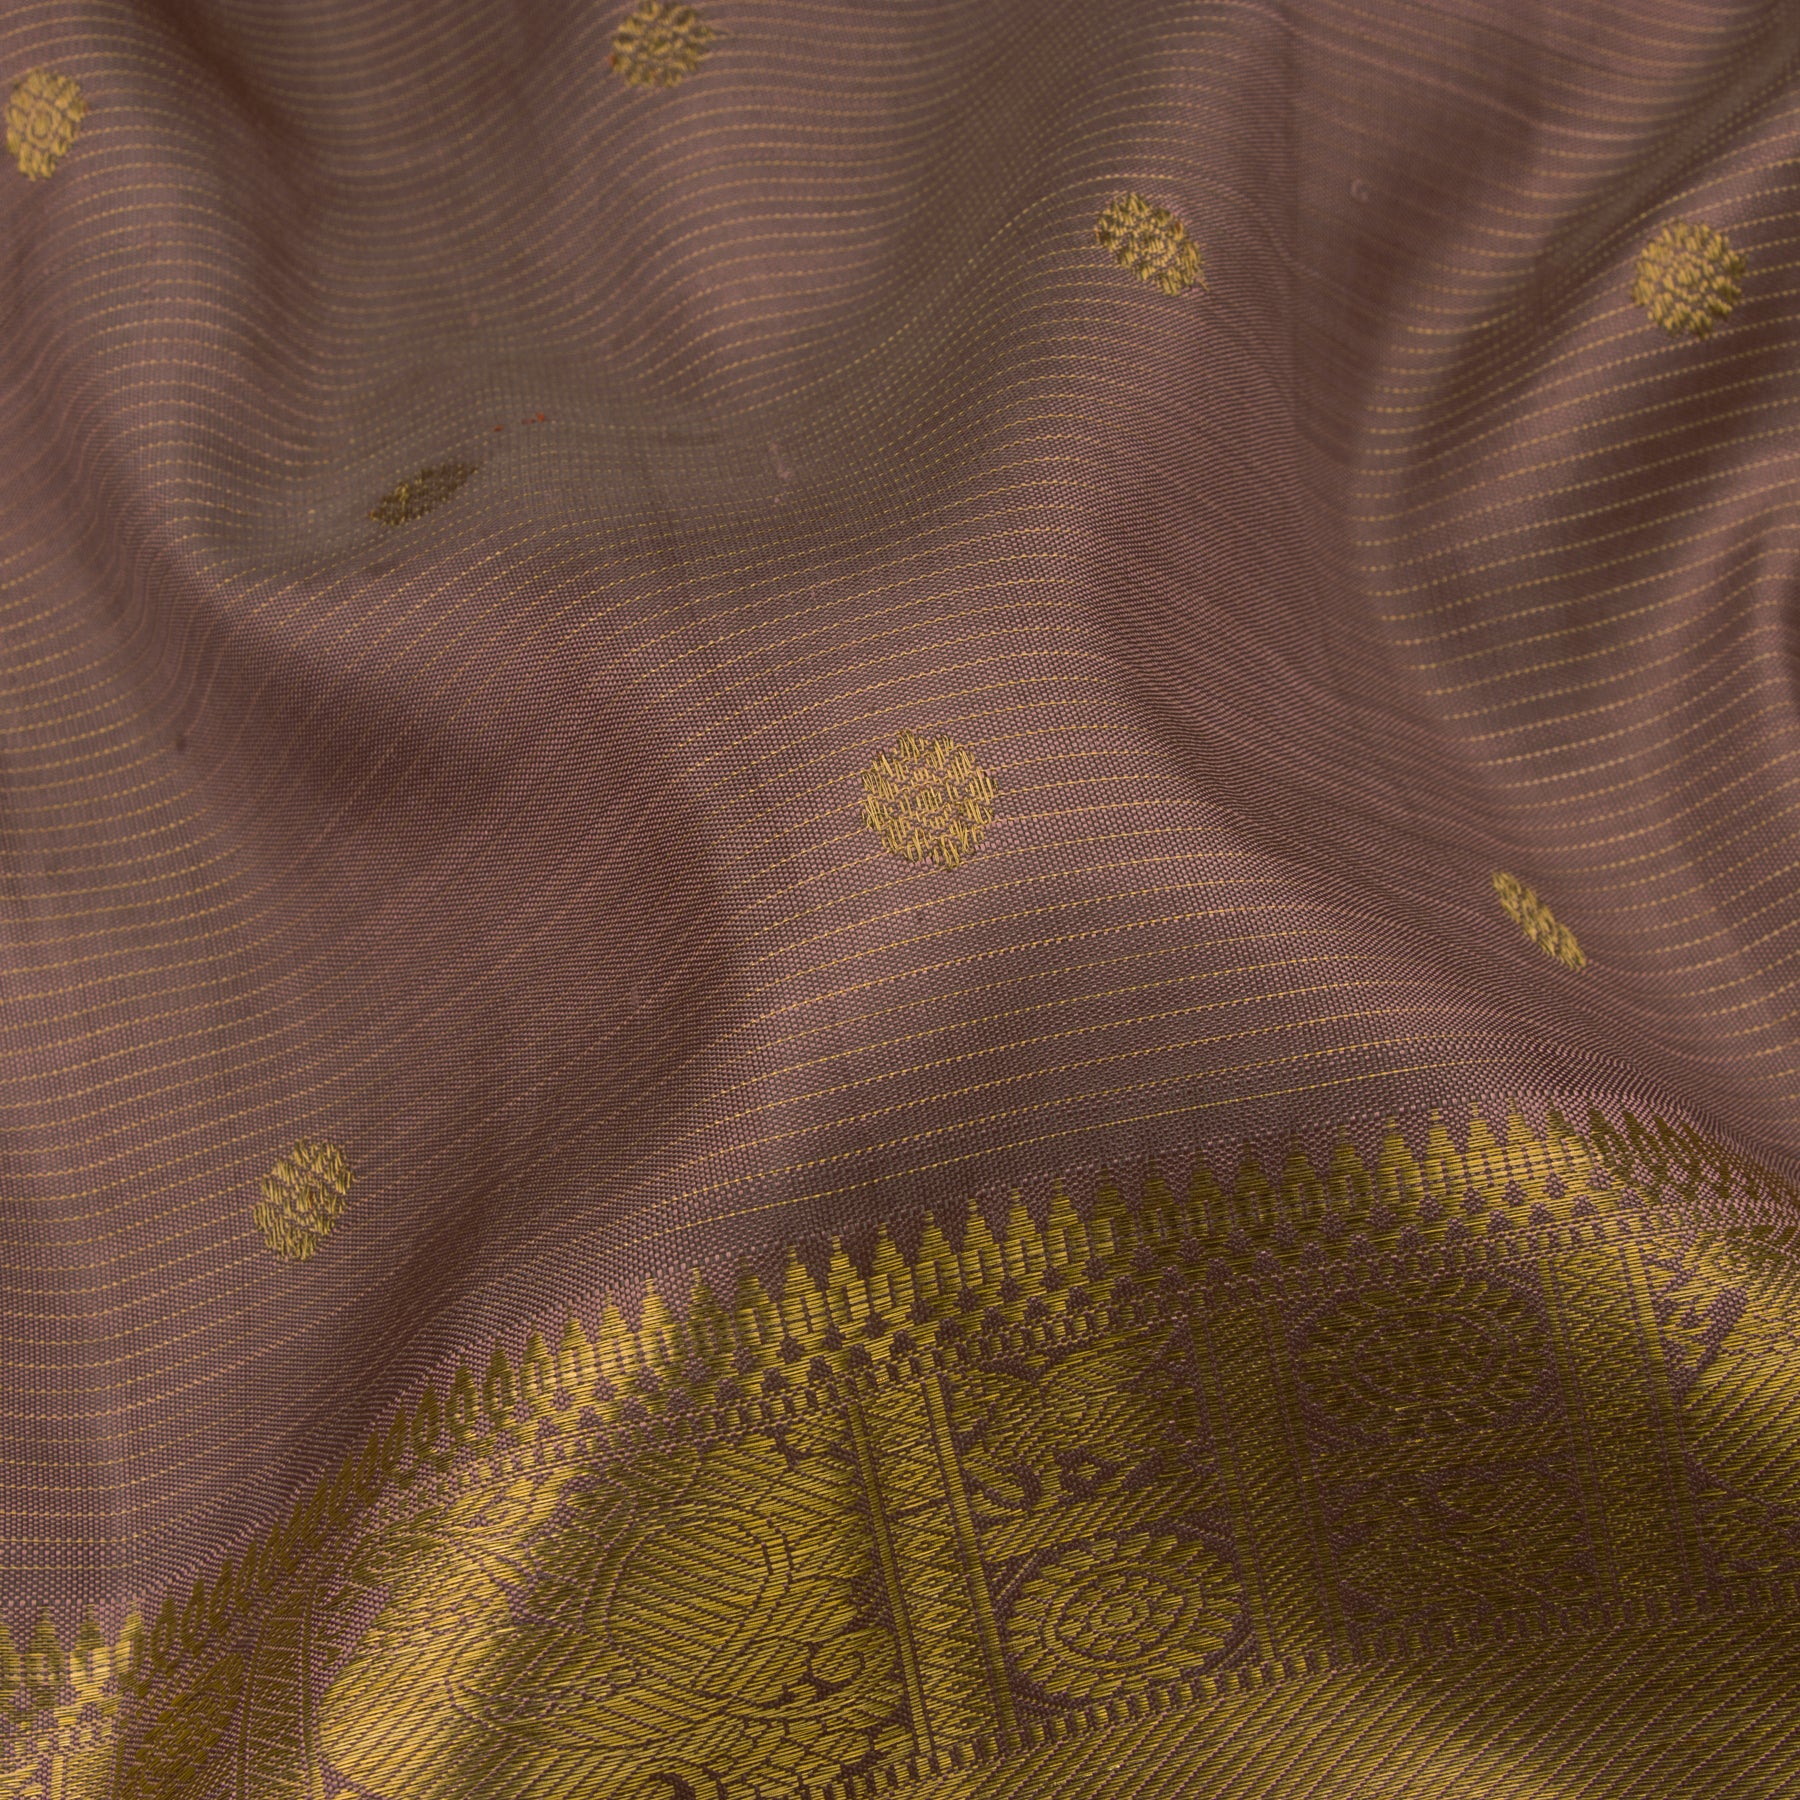 Kanakavalli Kanjivaram Silk Sari 22-599-HS001-13827 - Fabric View